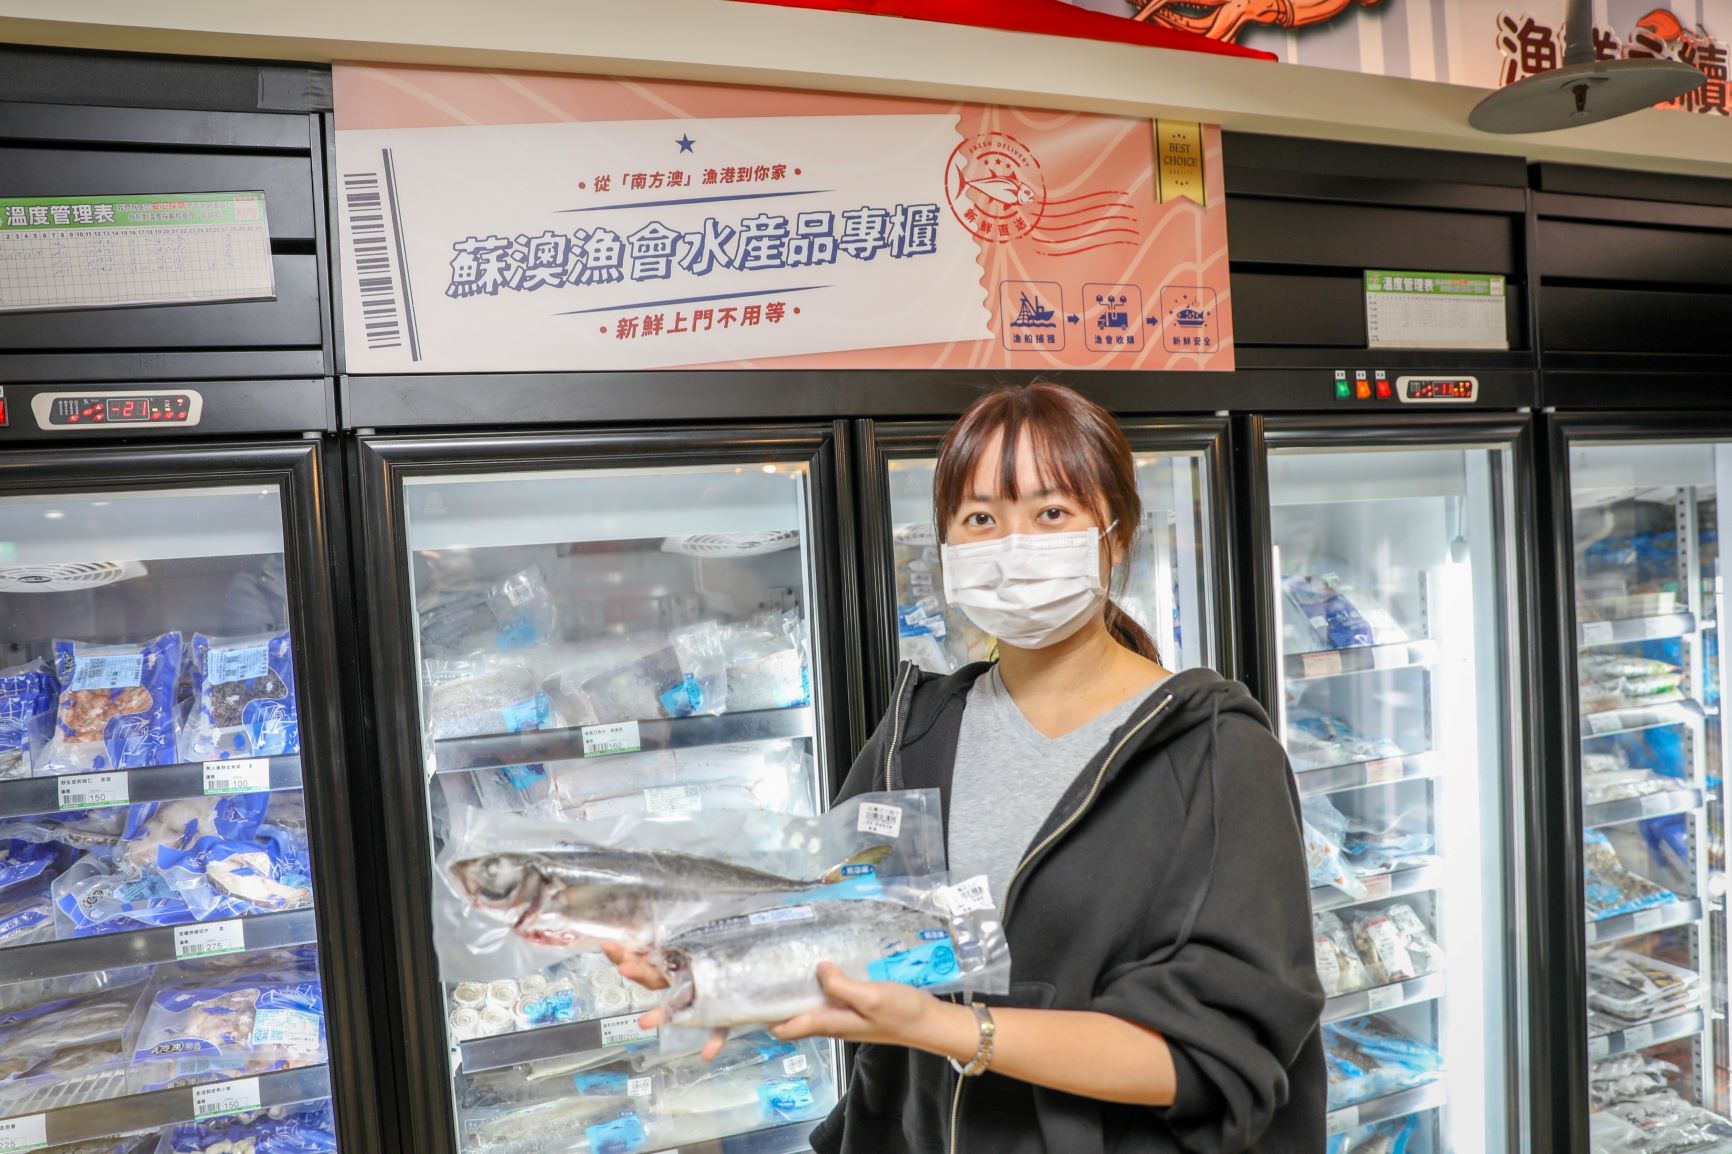 板橋農會超市設置蘇澳漁會水產品專櫃